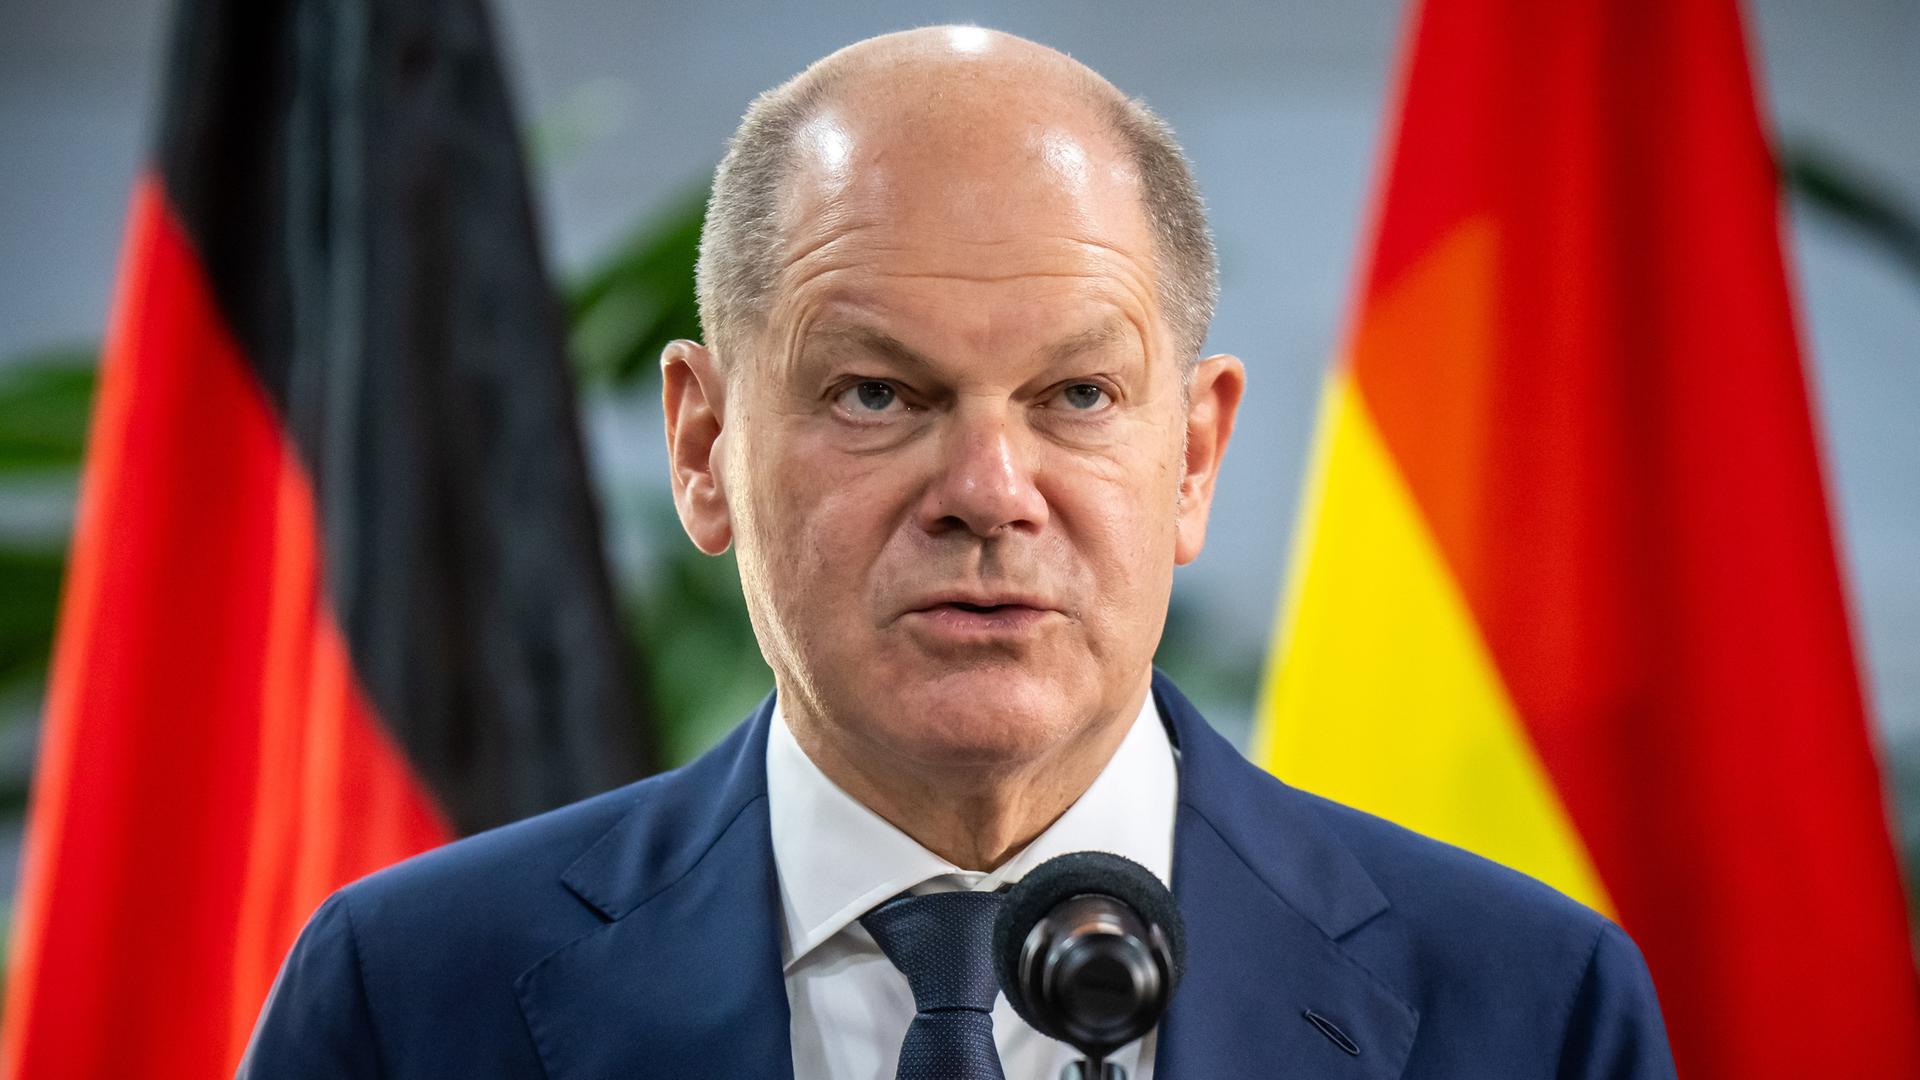 Bundeskanzler Olaf Scholz steht vor einem Mikrofon; im Hintergrund sind Fahnen aufgestellt.